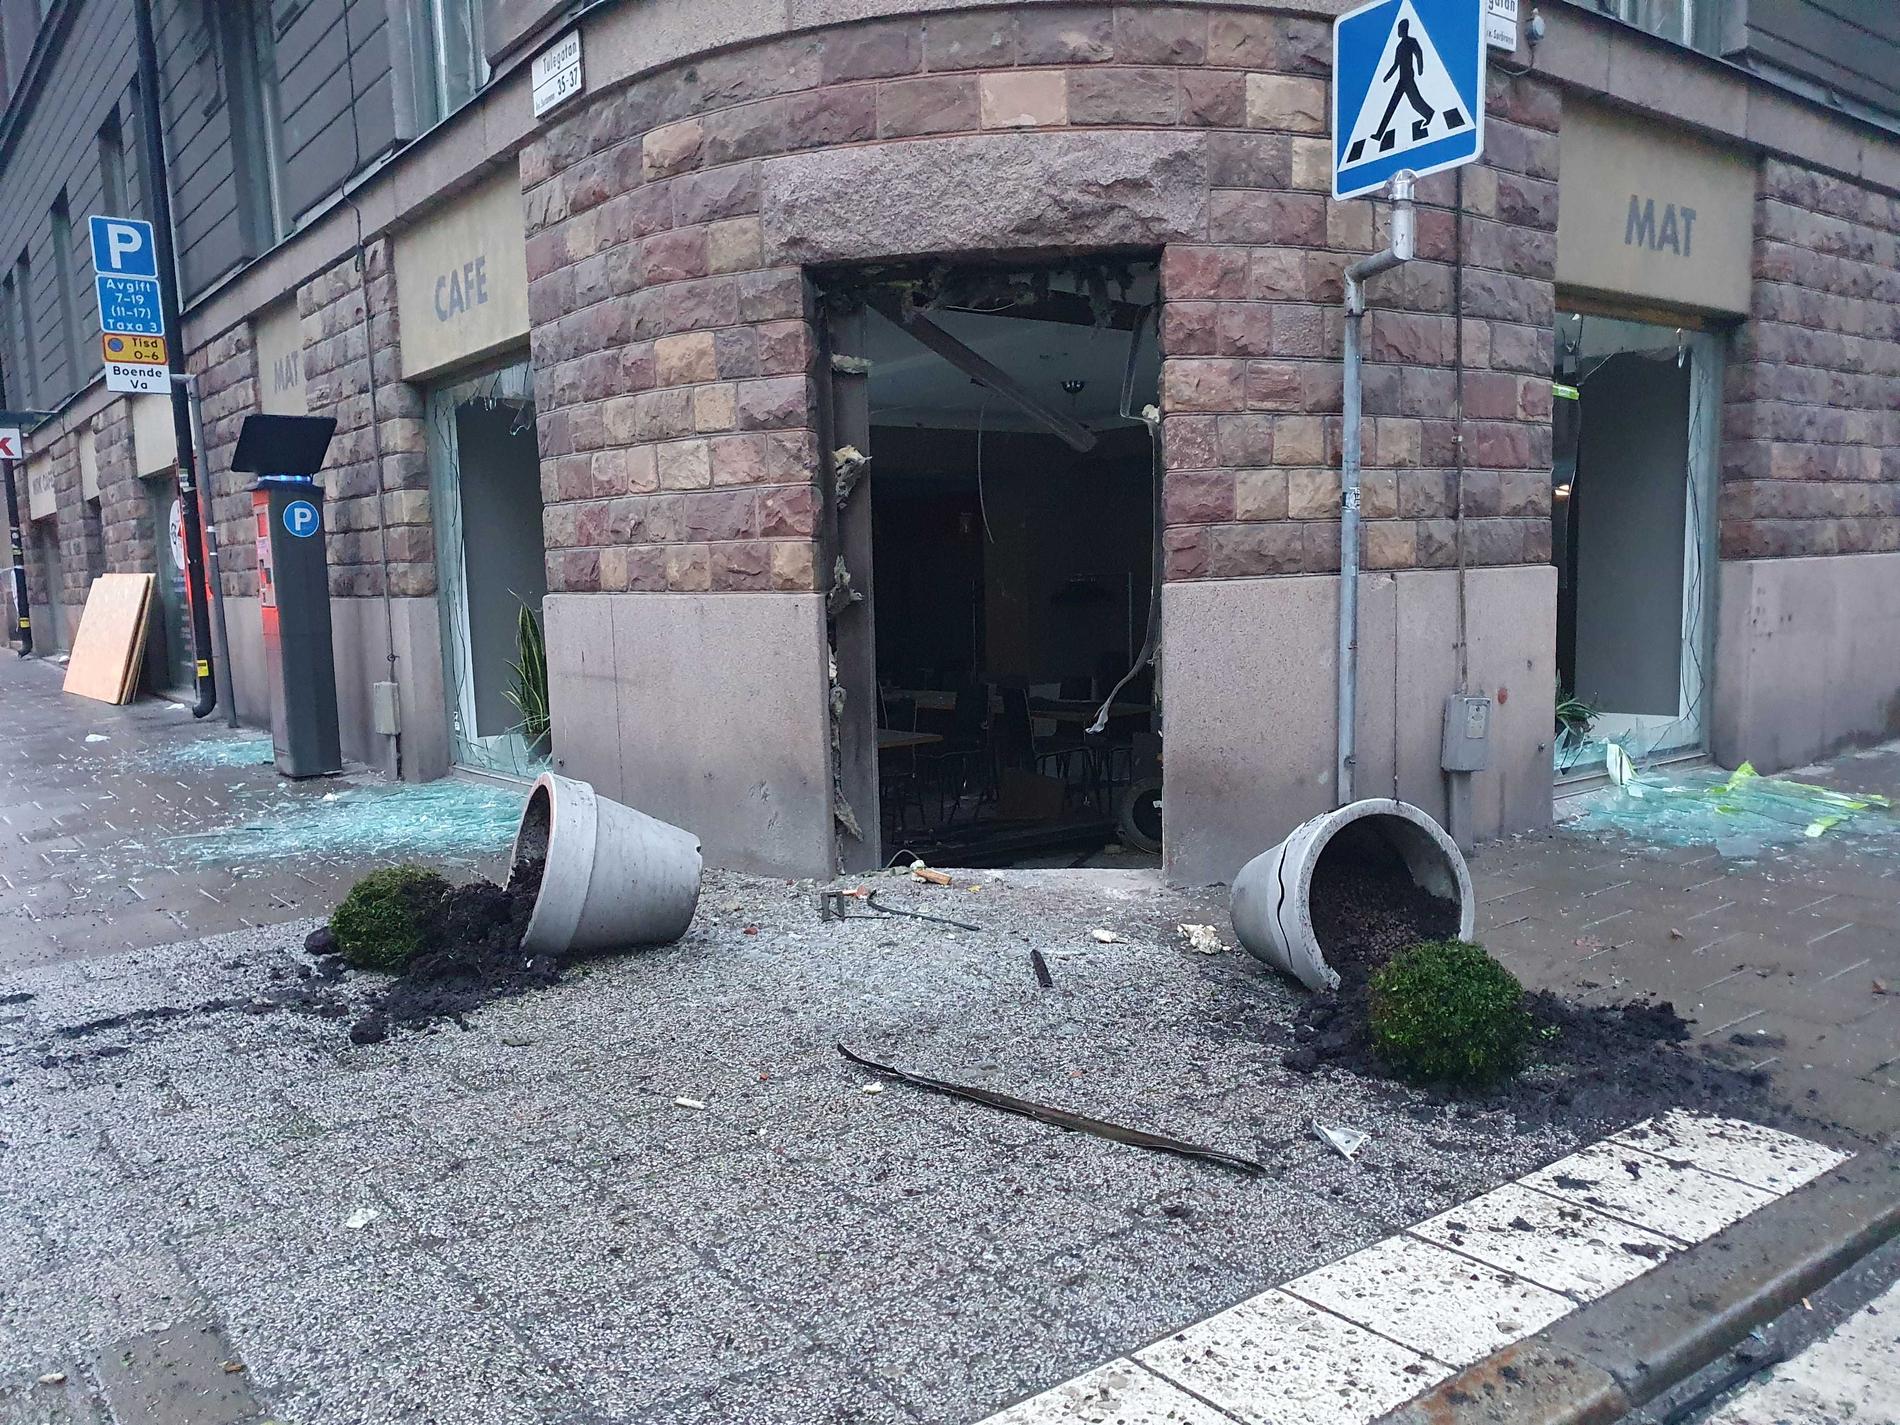 Kaféet i centrala Stockholm sprängdes i mars.